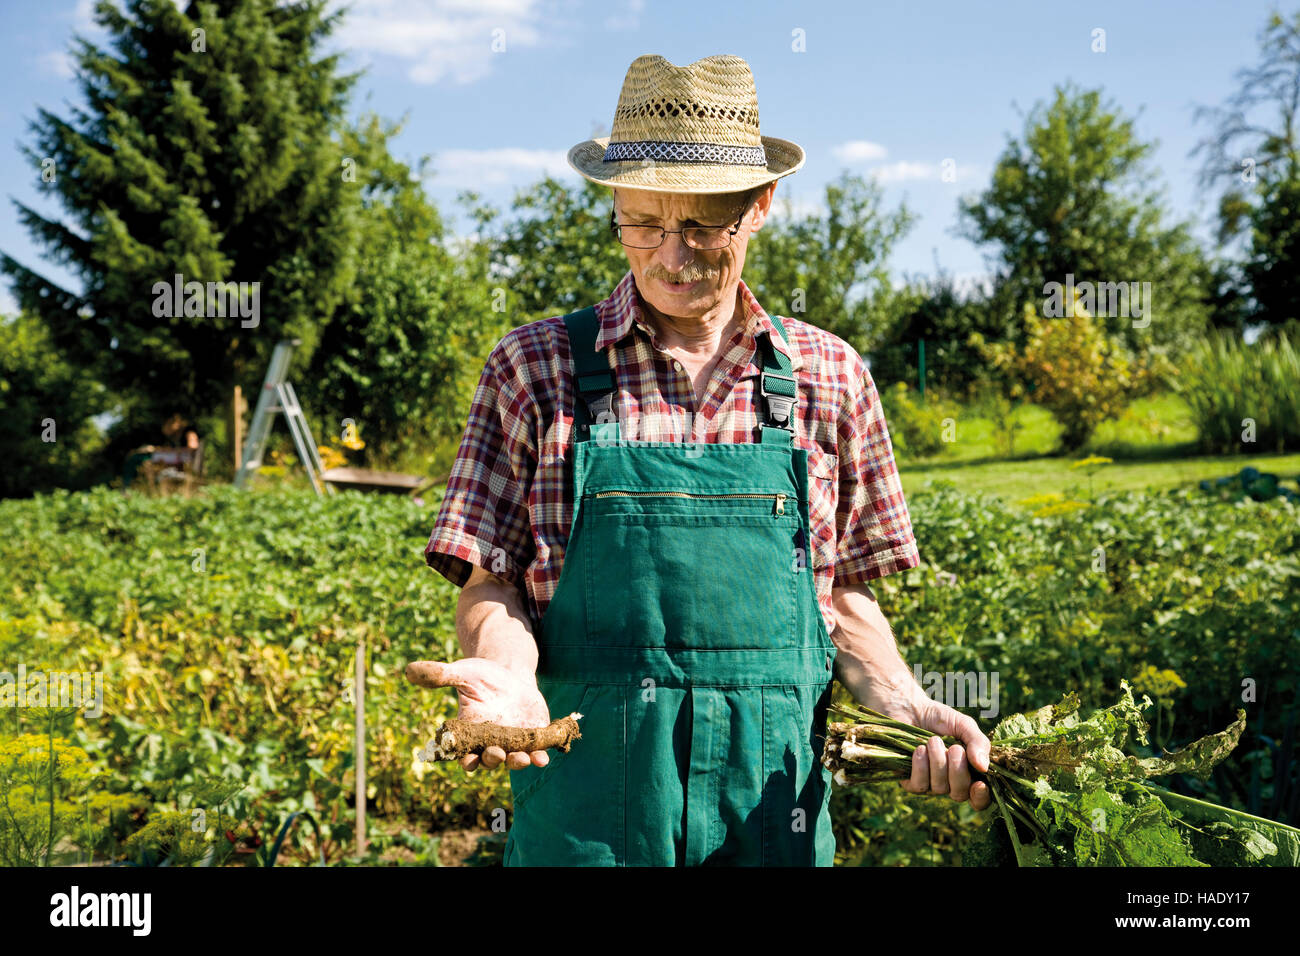 Jardinero con rábano cosechado en sus manos Foto de stock